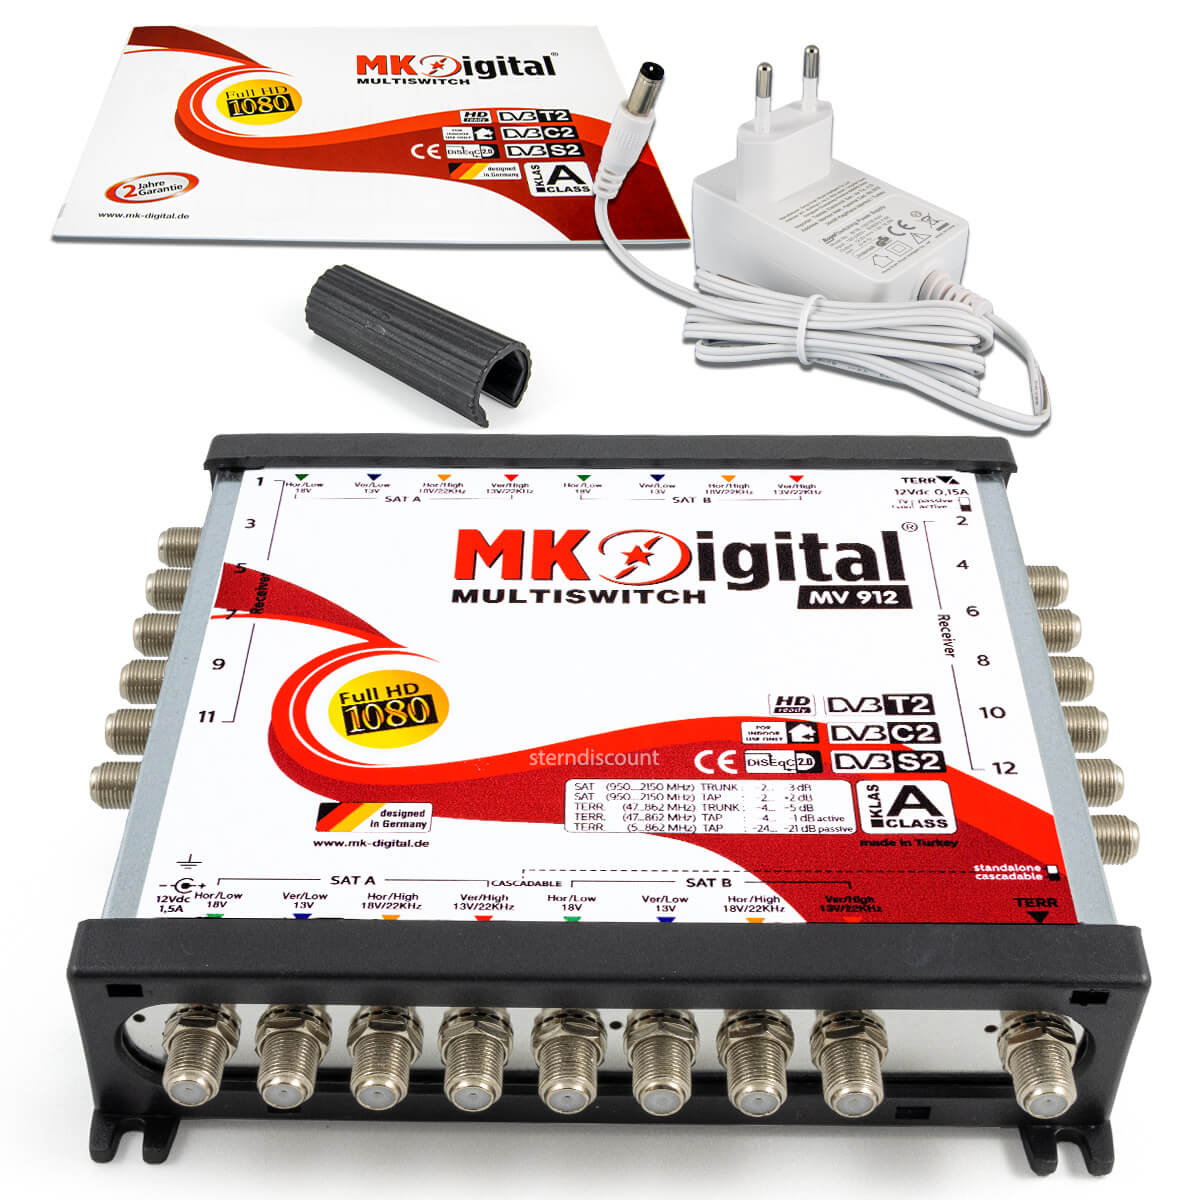 MK-Digital-9-12-Multischalter-SAT-zwoelf-teilnehmer